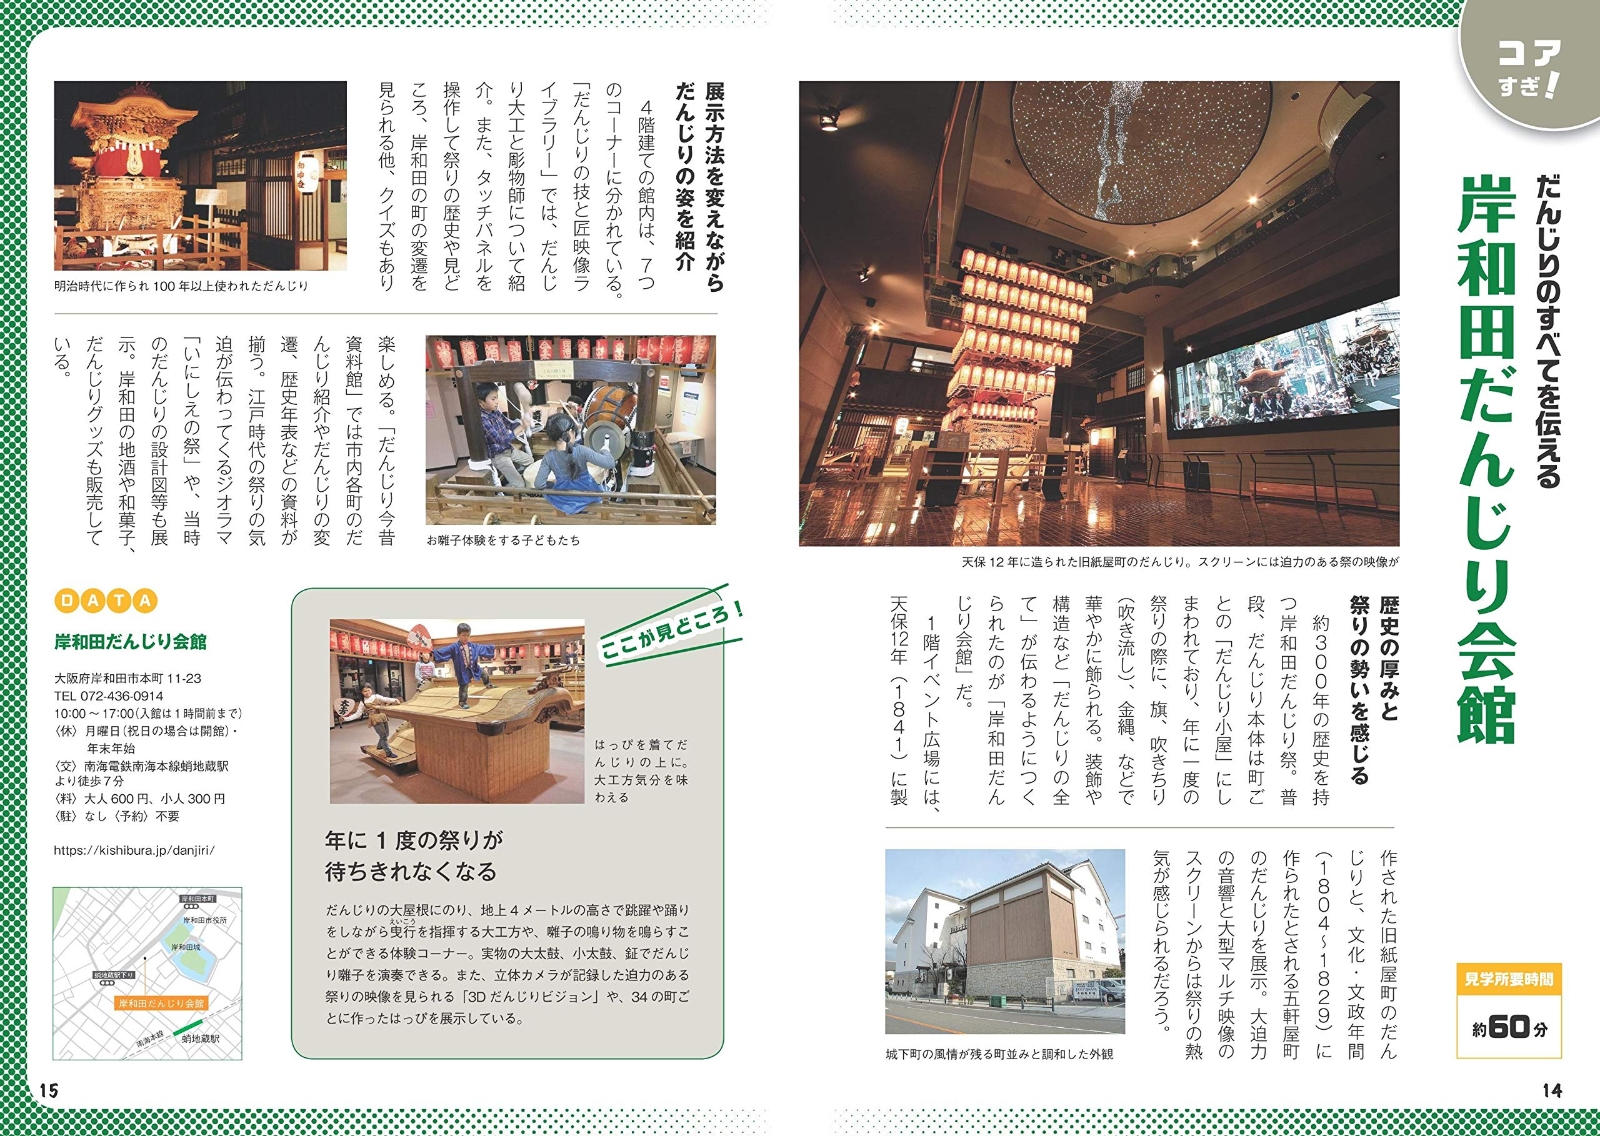 楽天ブックス: 京都・大阪・神戸 マニアック博物館ガイド おもしろ珍